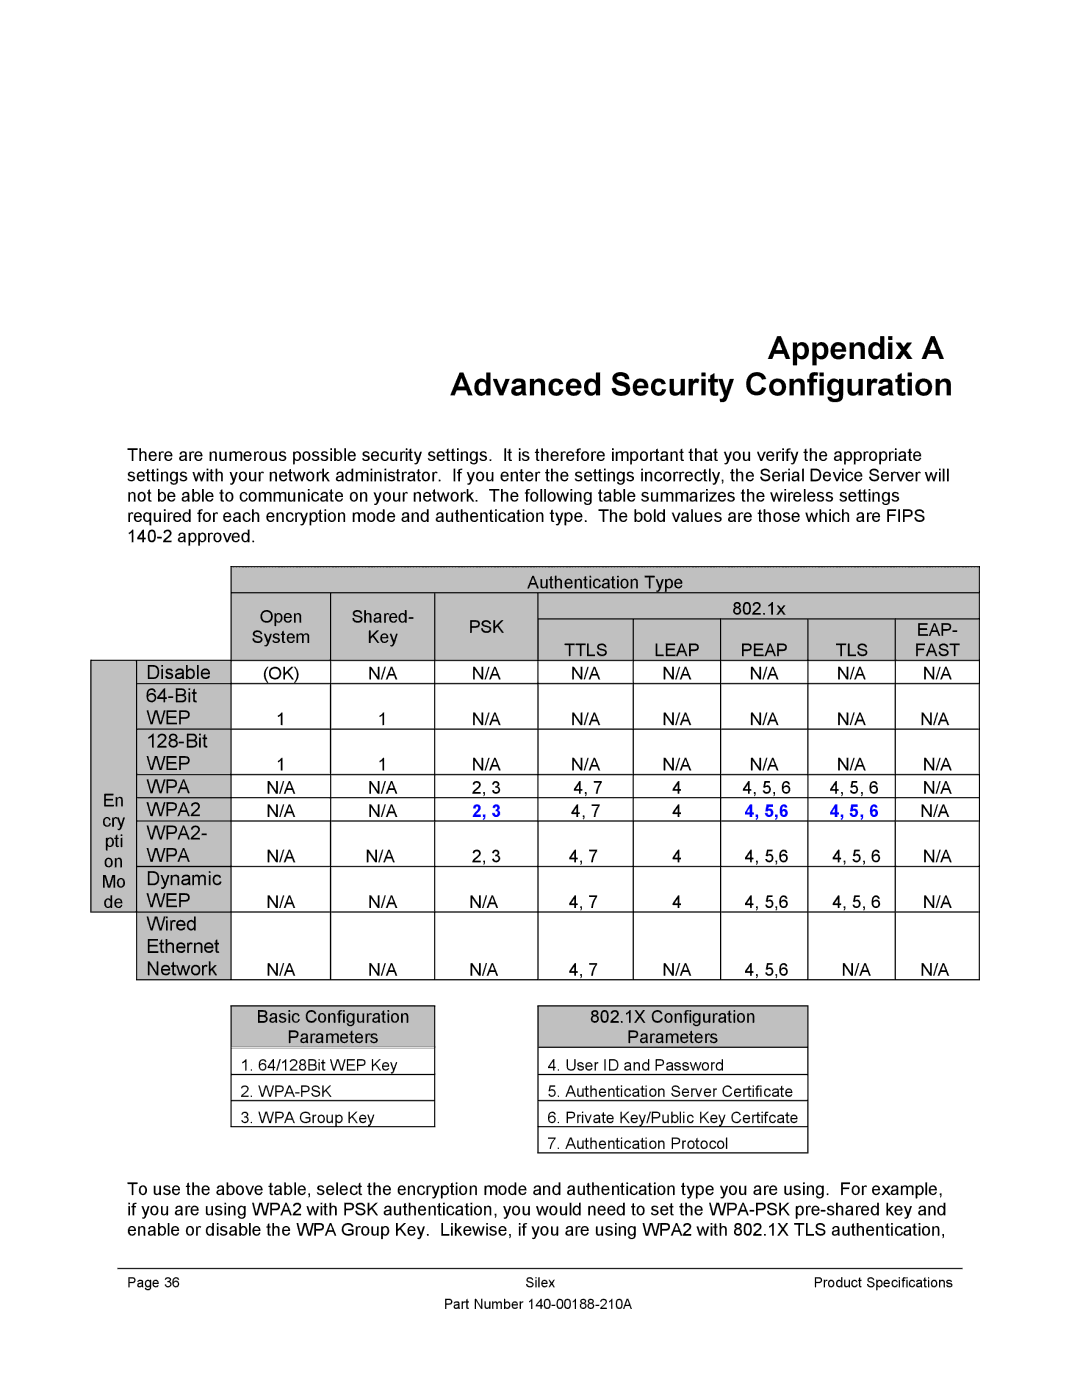 Silex technology SX-500-1402 manual Appendix a Advanced Security Configuration, Psk, Eap, Ttls Leap, TLS Fast 